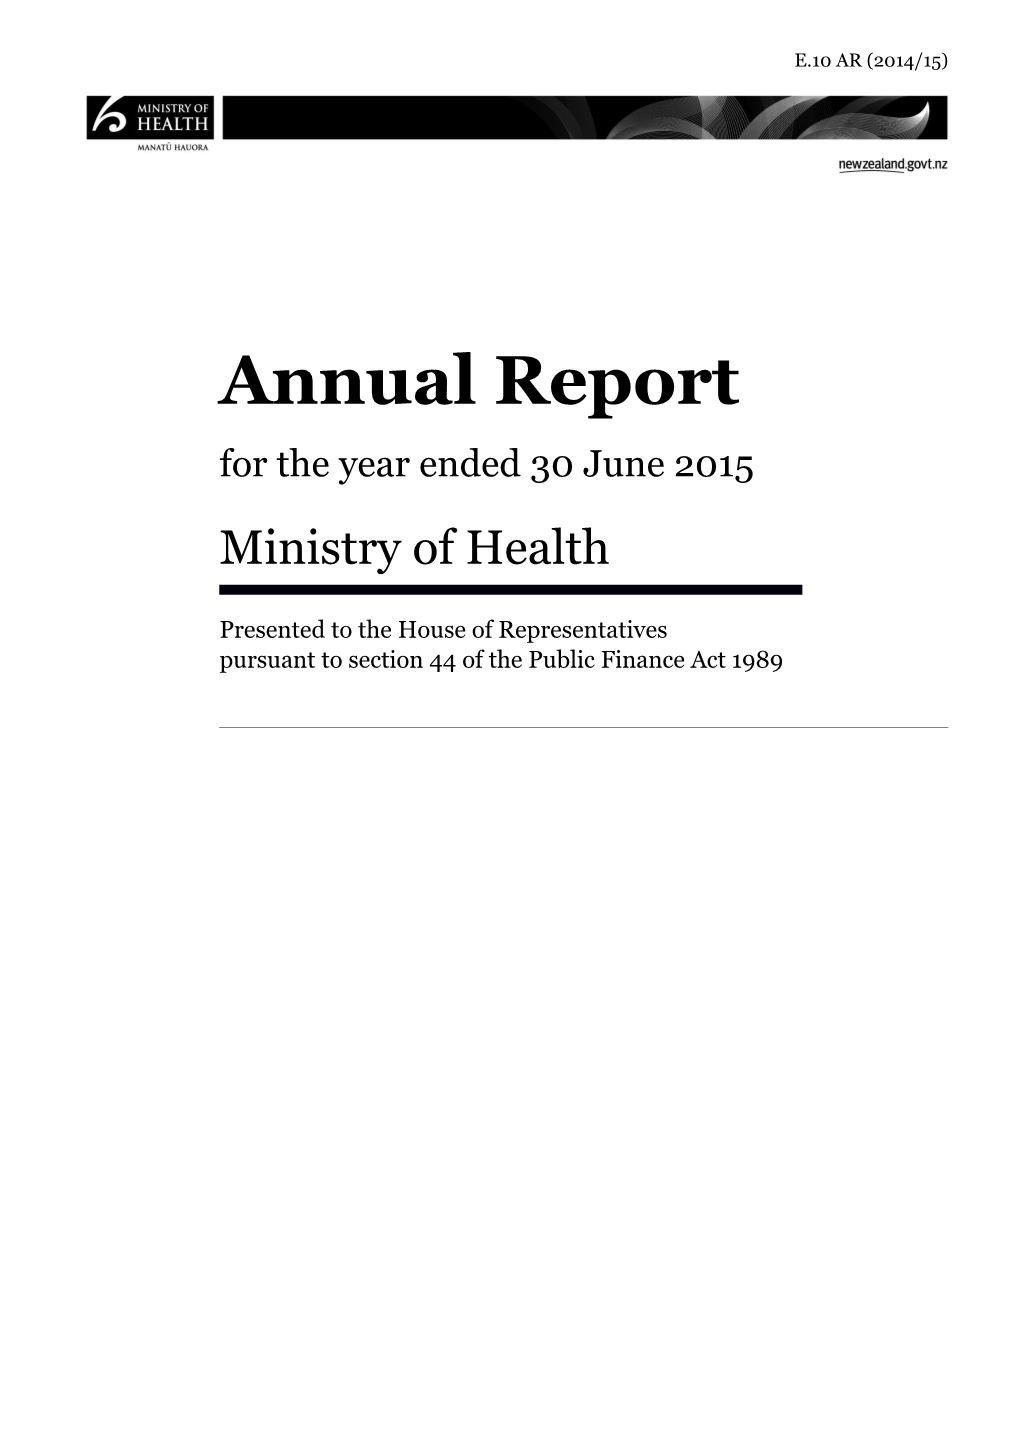 Annual Report s2